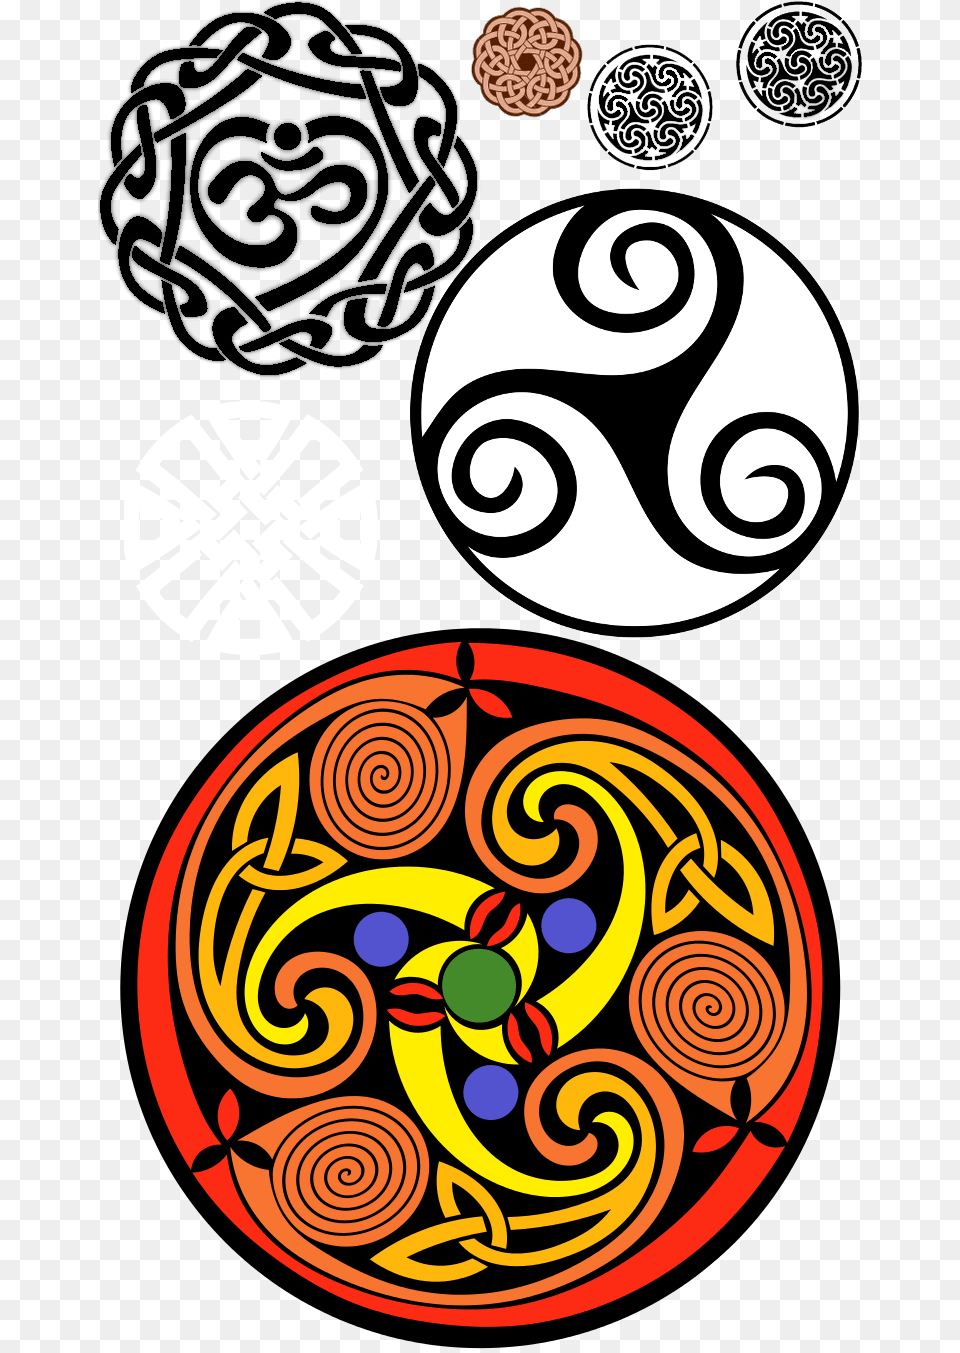 Celtic Celtic Symbols Celtic Knots Celtic Knot Triskele Triple Spiral, Art, Dynamite, Weapon Png Image